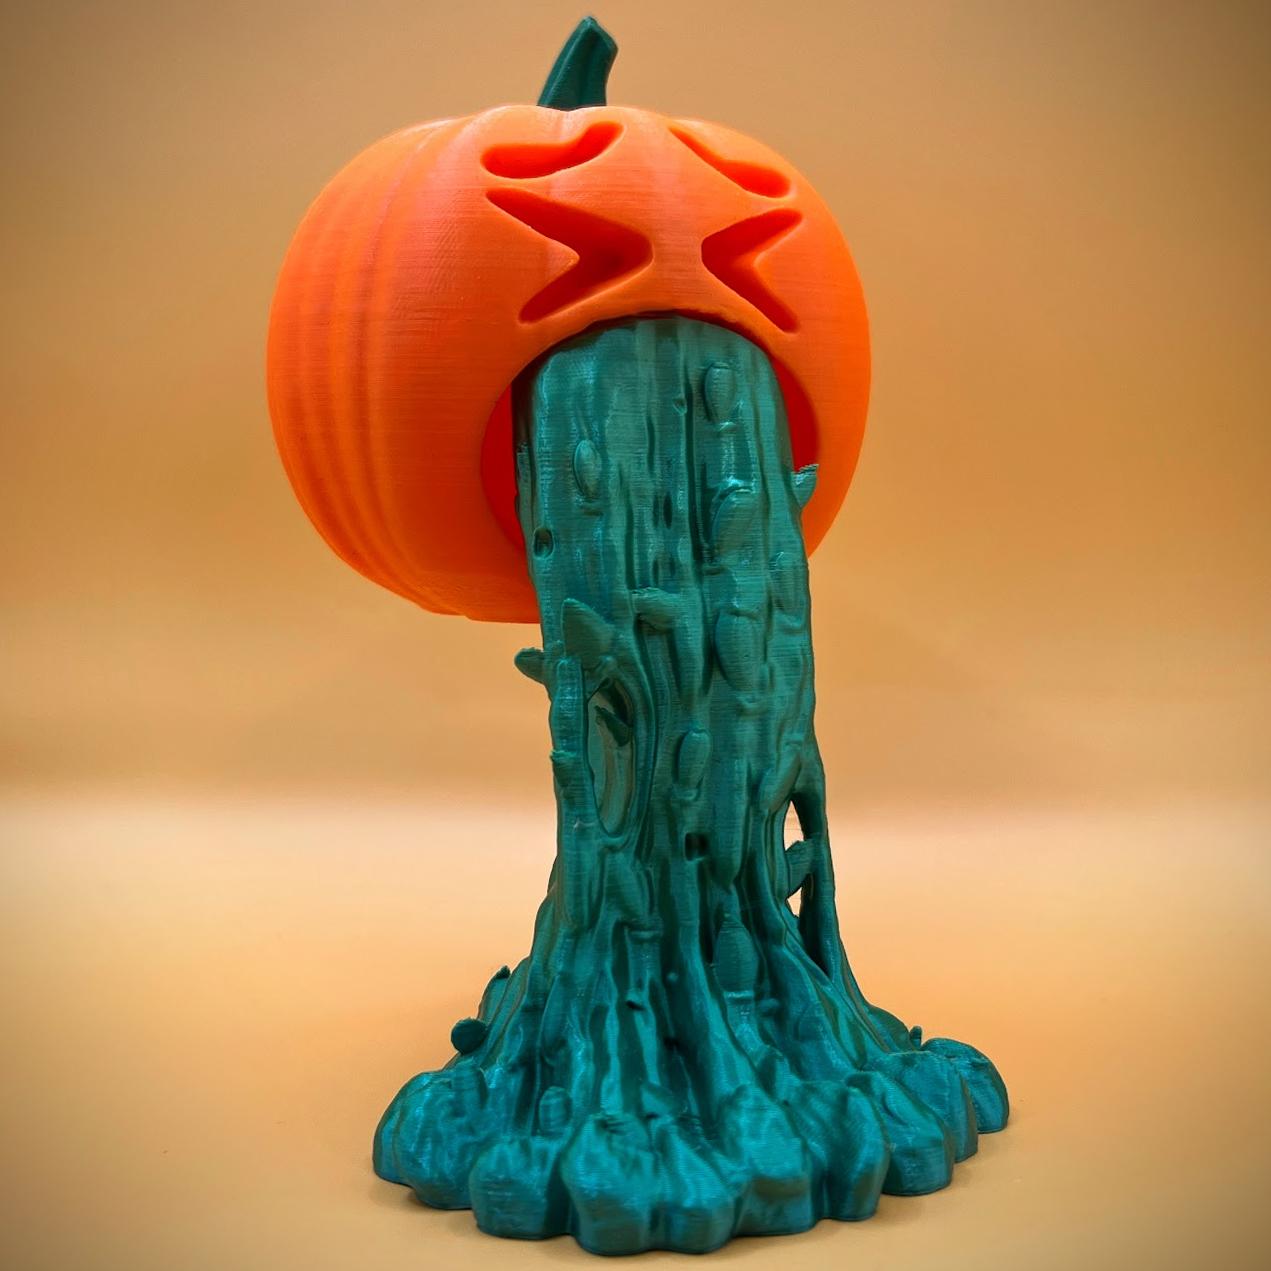 Puking Pumpkin 3d model